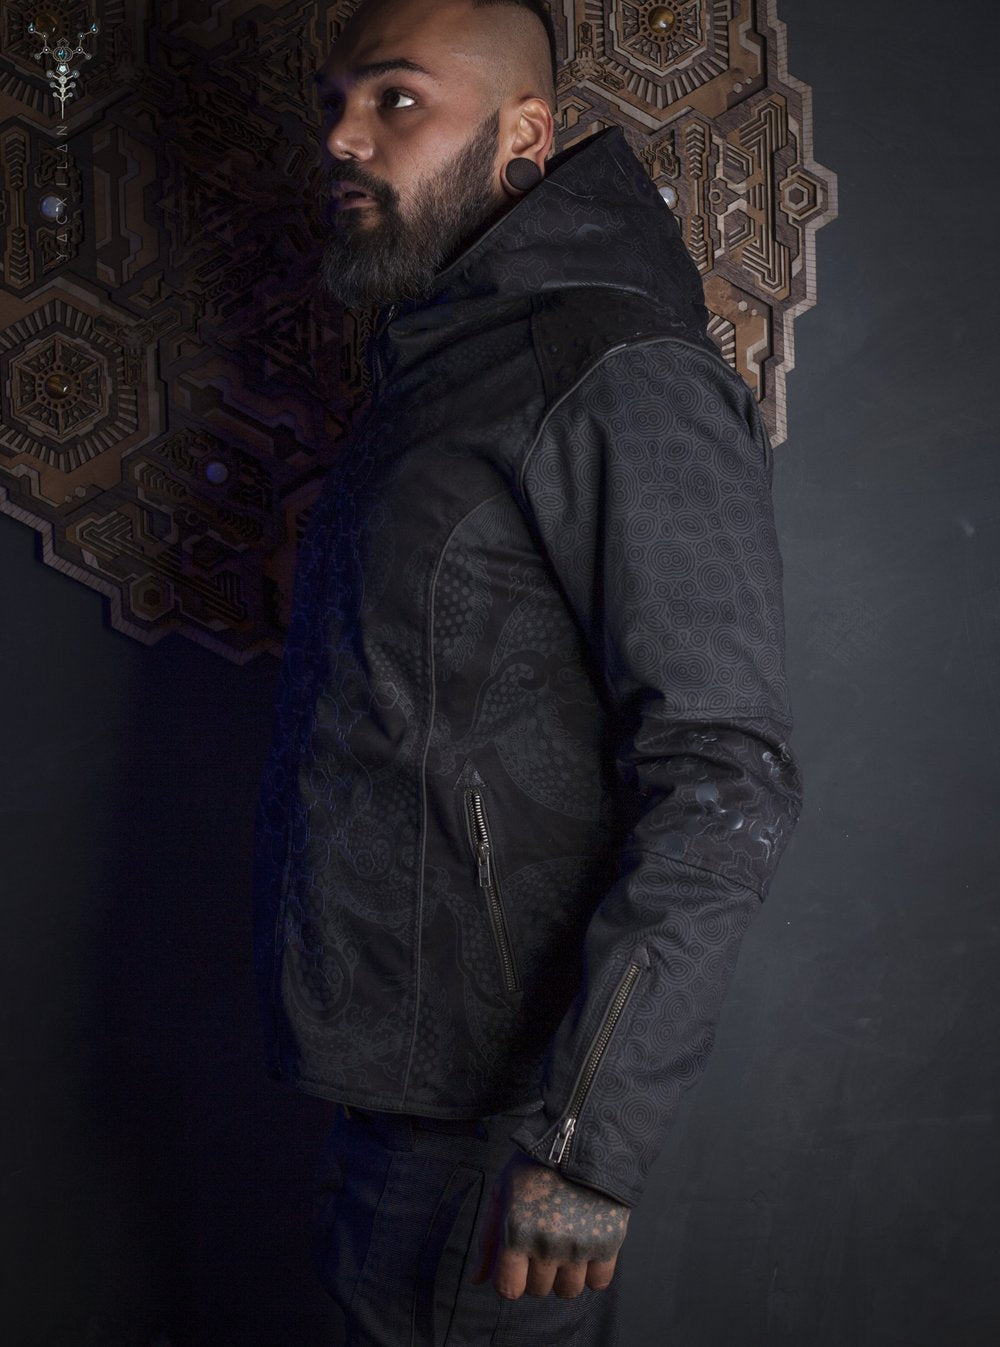 Yacxilan Jacket Warrior Man Sacred Geometry Hoodie Dark Fashion